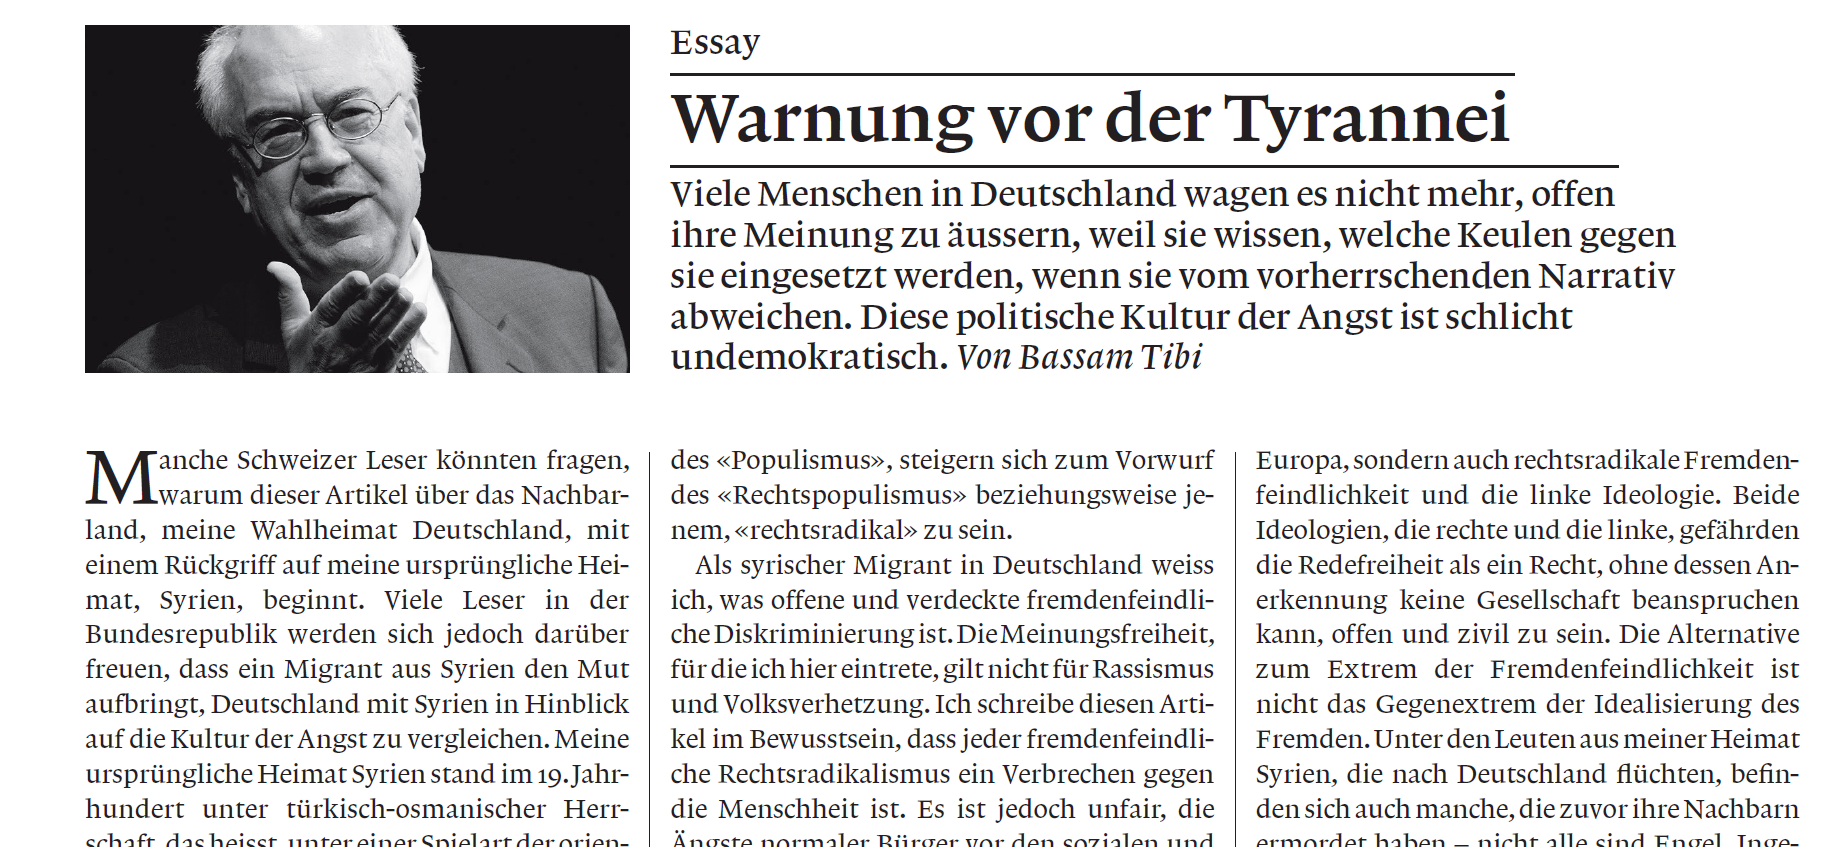 Bassam Tibi: "Warnung vor der Tyrannei", in: Die Weltwoche, Nr. 42/2015, S. 52-53.